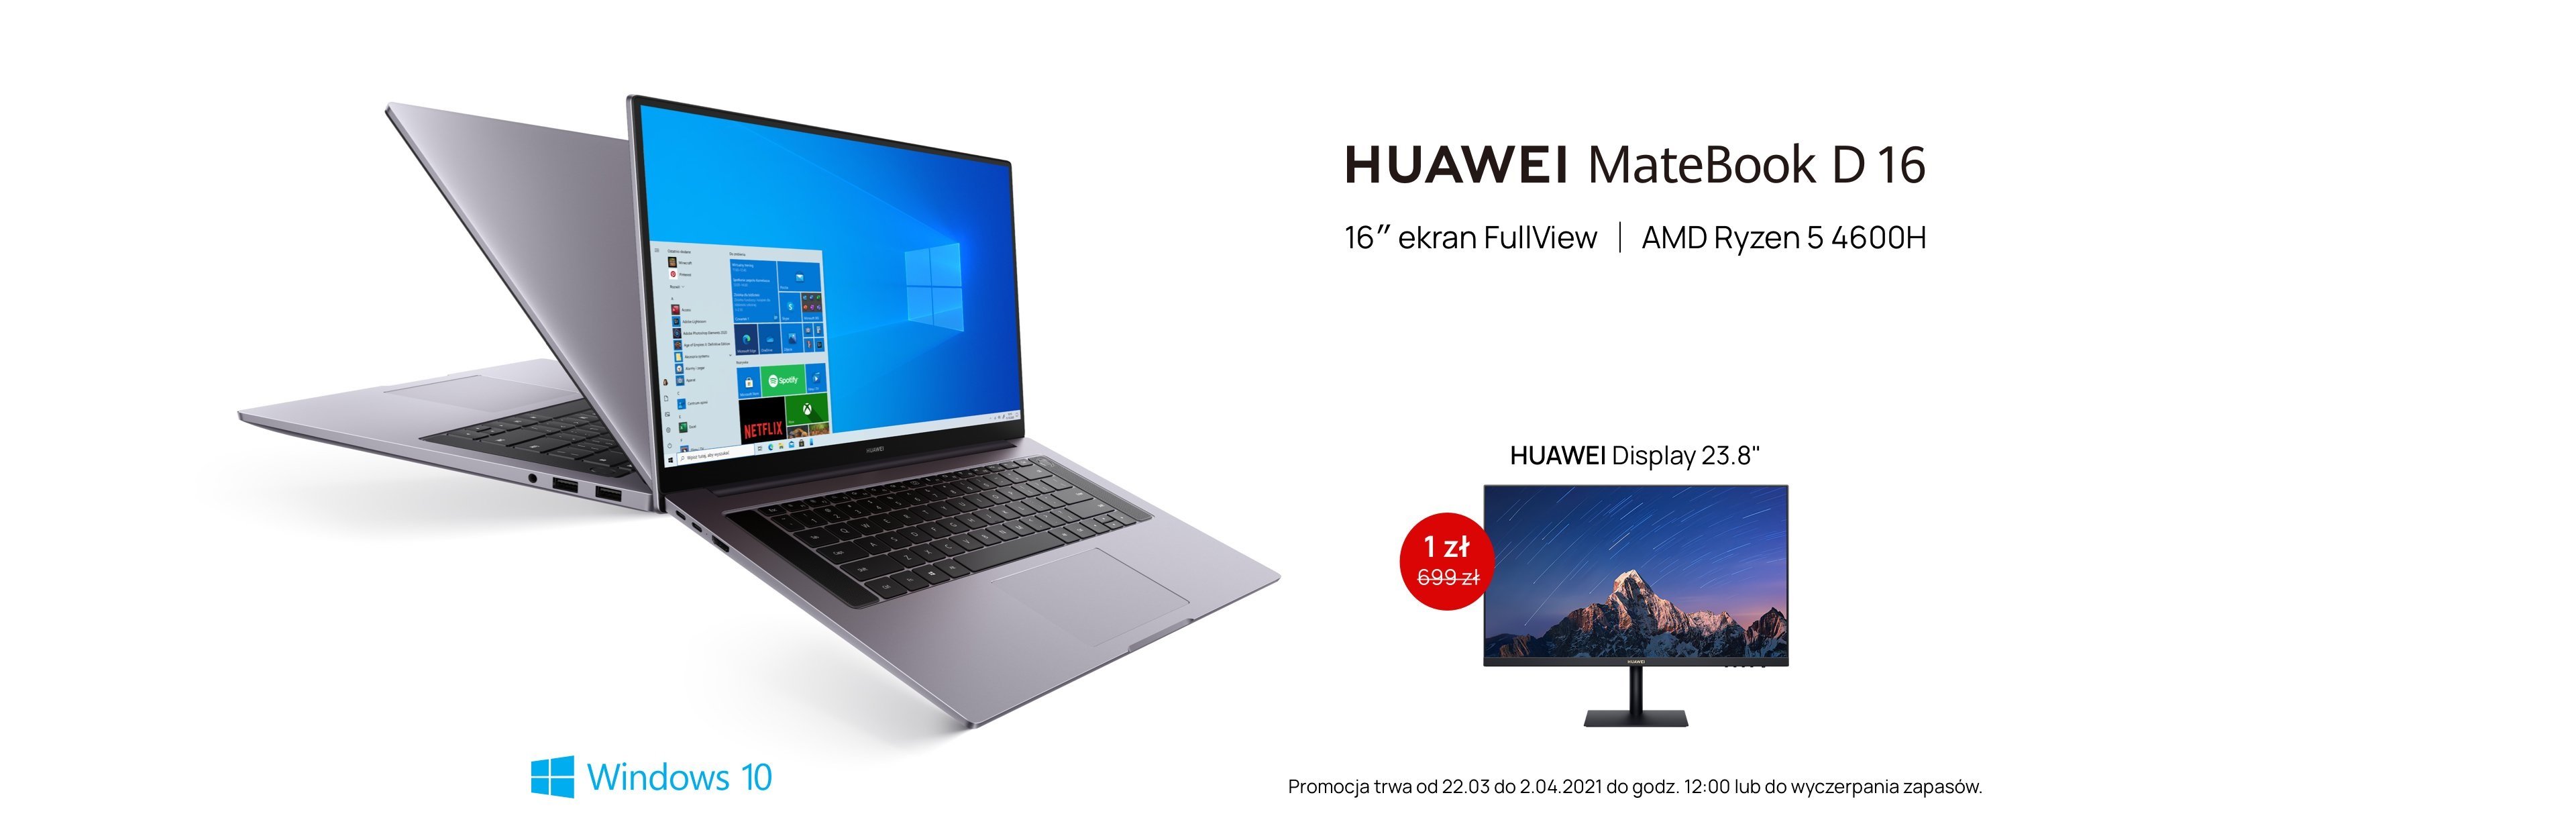 Huawei MateBook D16 premiera Polska oferta przedsprzedażowa promocja